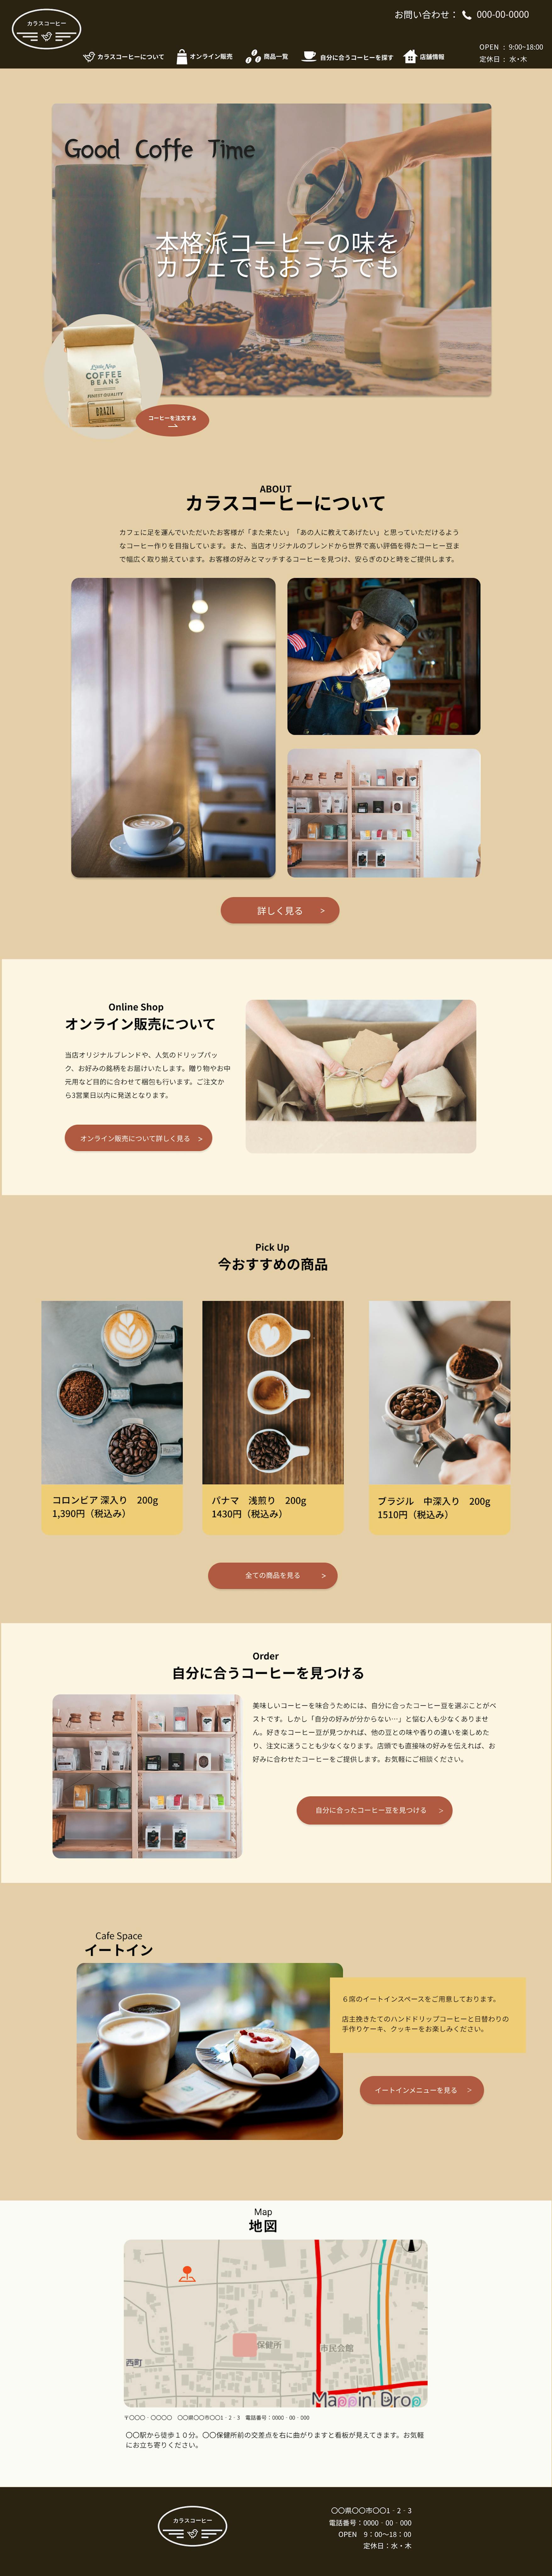 カフェ＆コーヒー豆販売サイト（架空サイト）-1